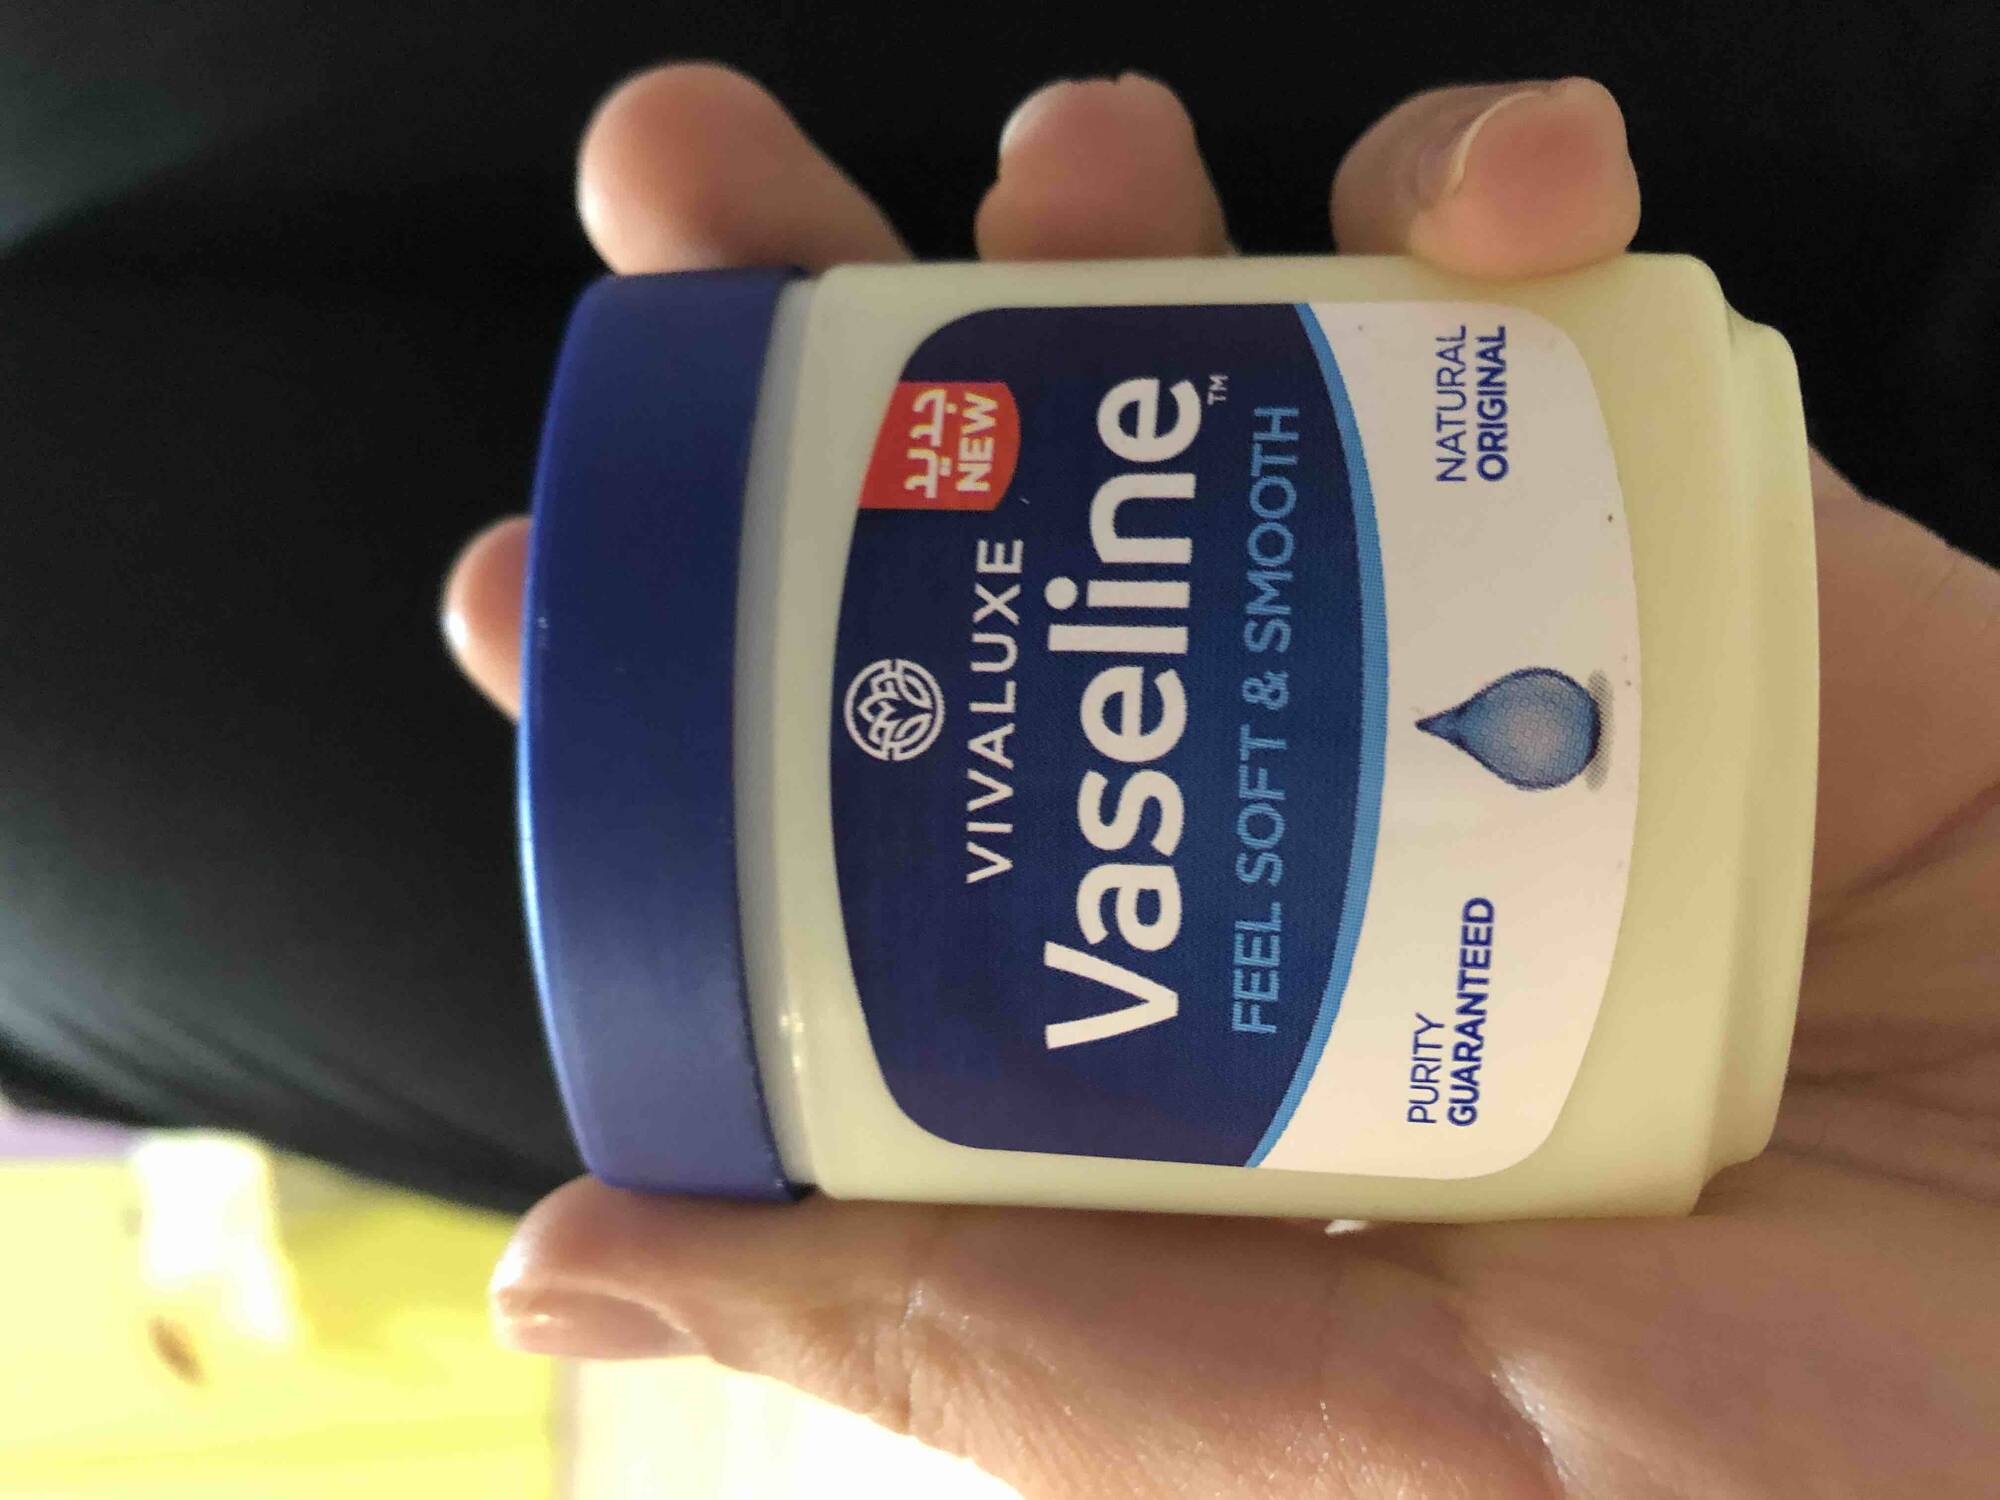 VIVALUXE - Vaseline feel soft & smooth